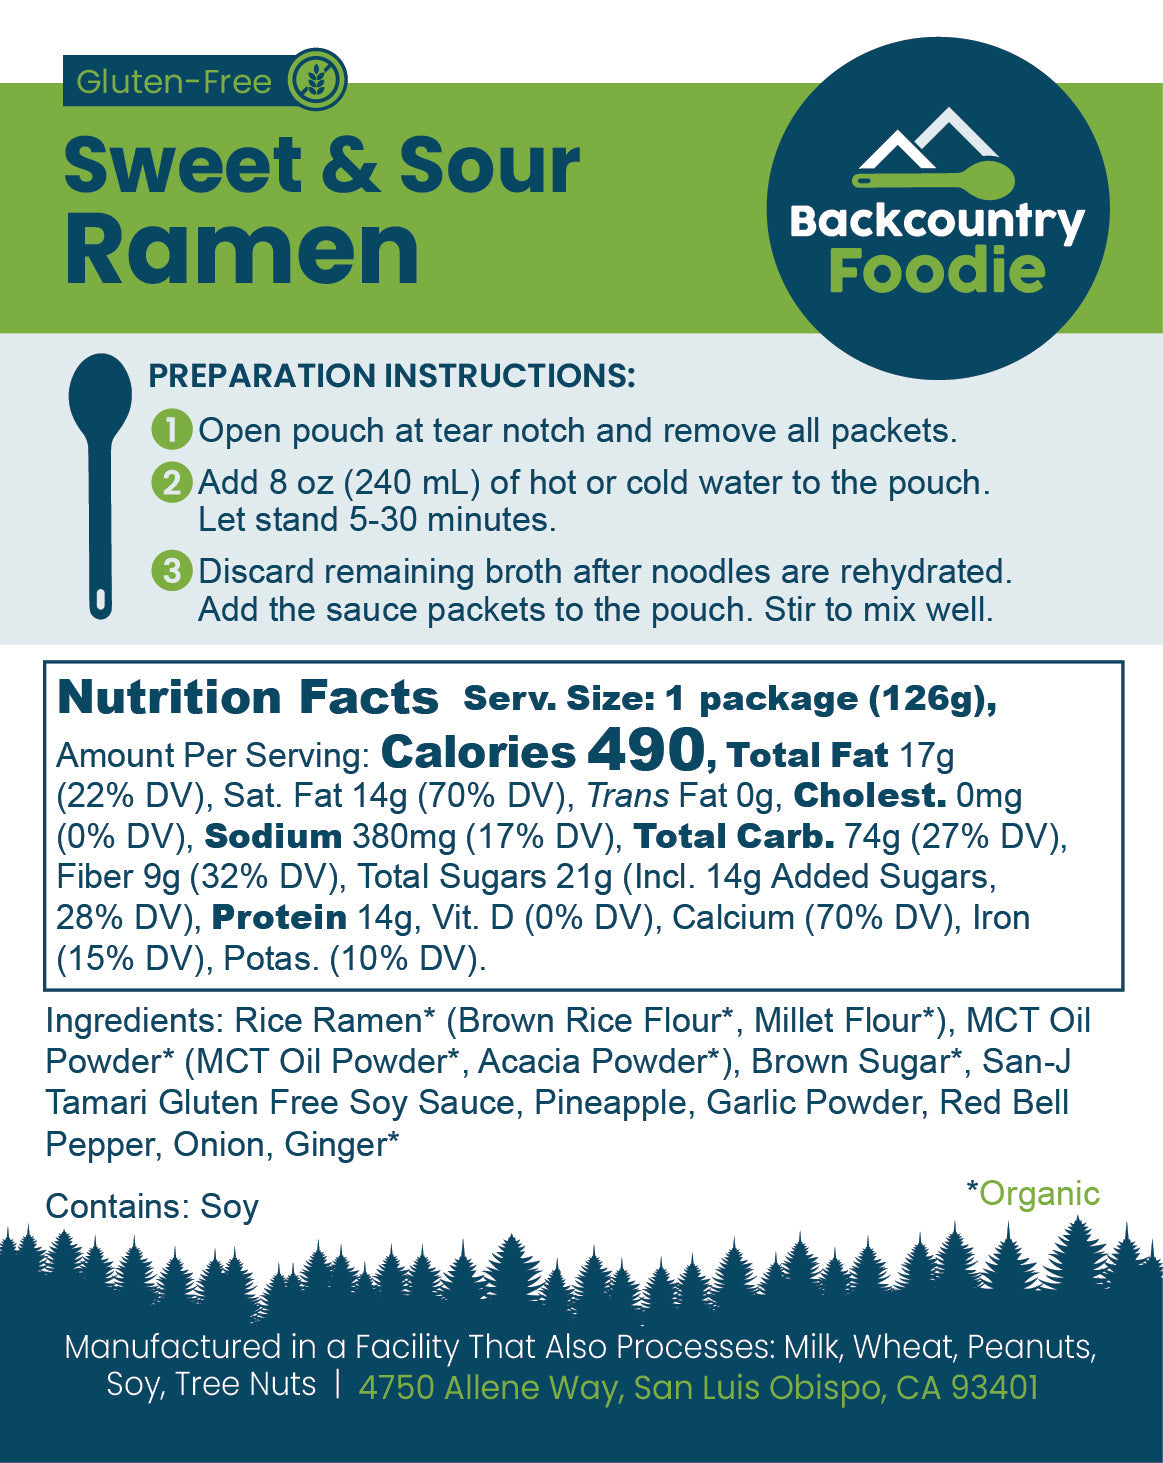 Backcountry Foodie - Sweet & Sour Ramen, Guten-Free